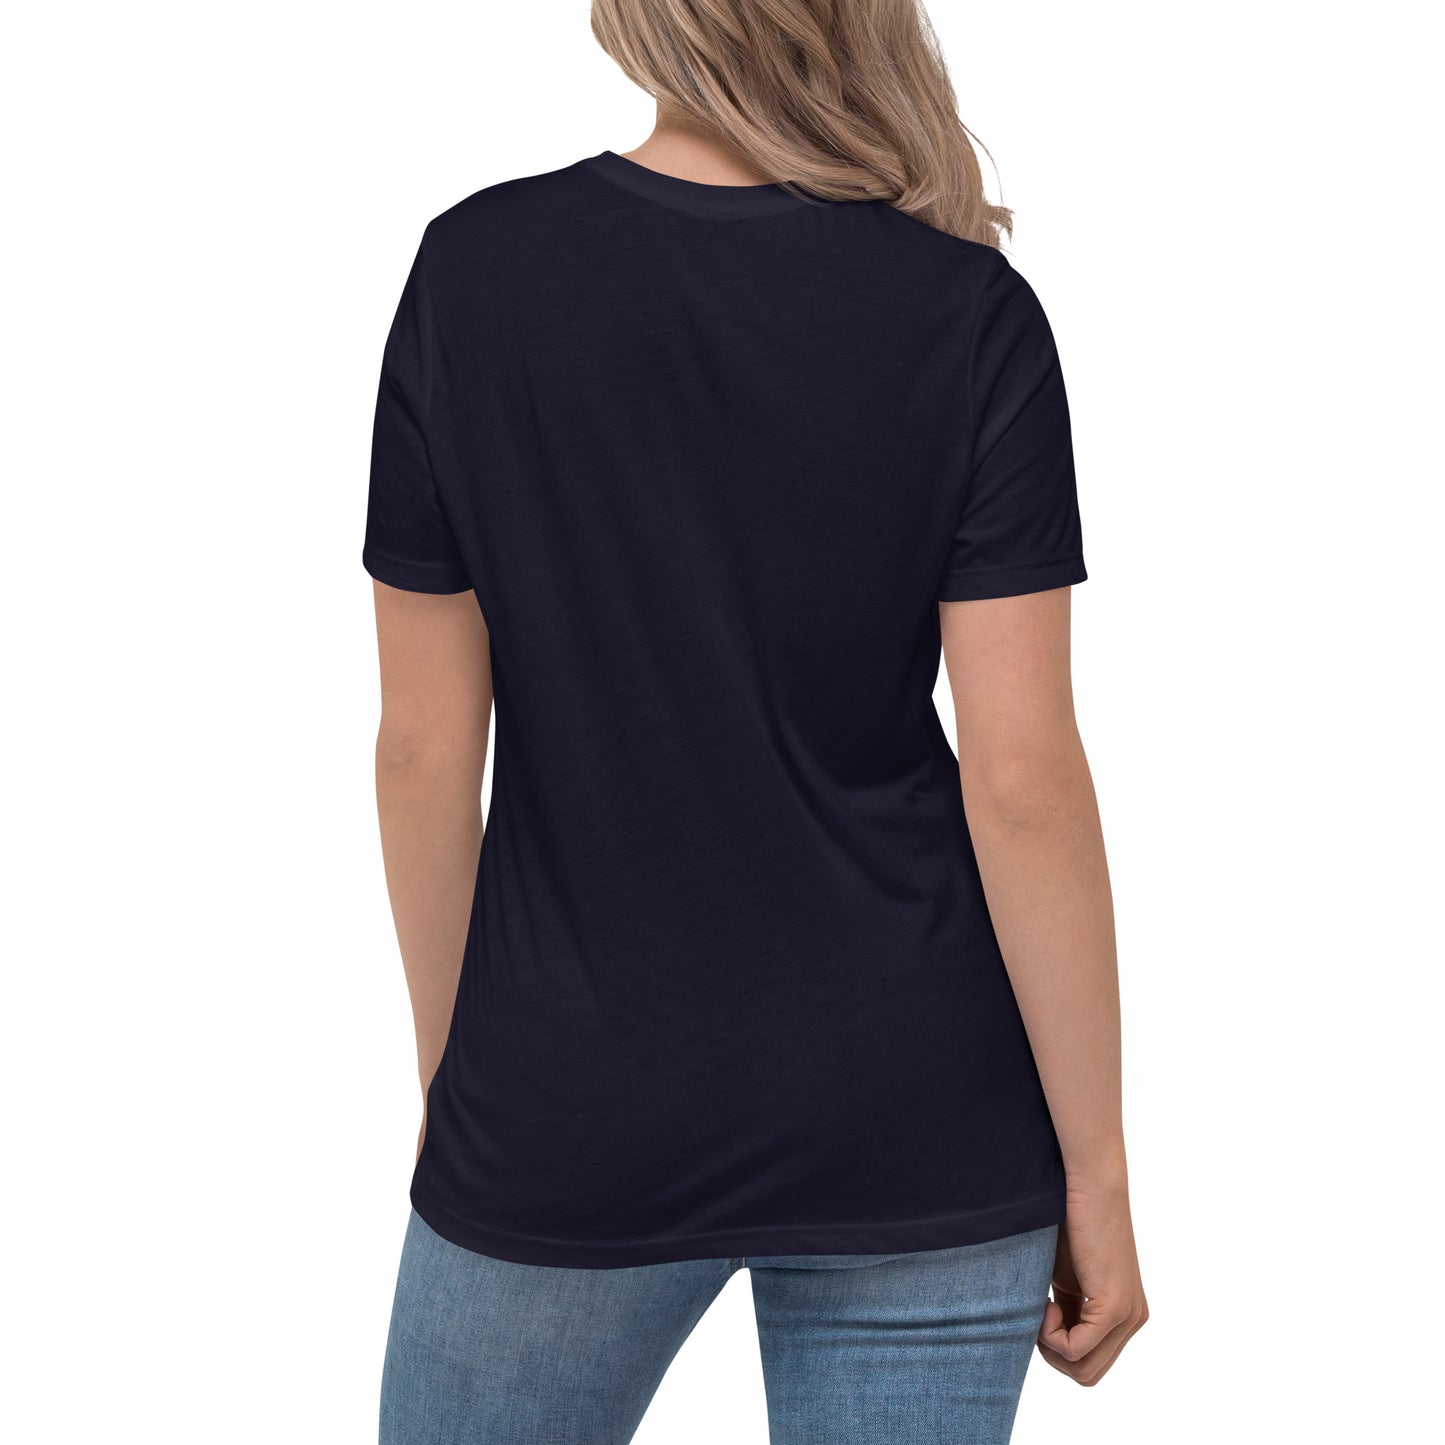 Ramen for life - Women's Relaxed T-Shirt